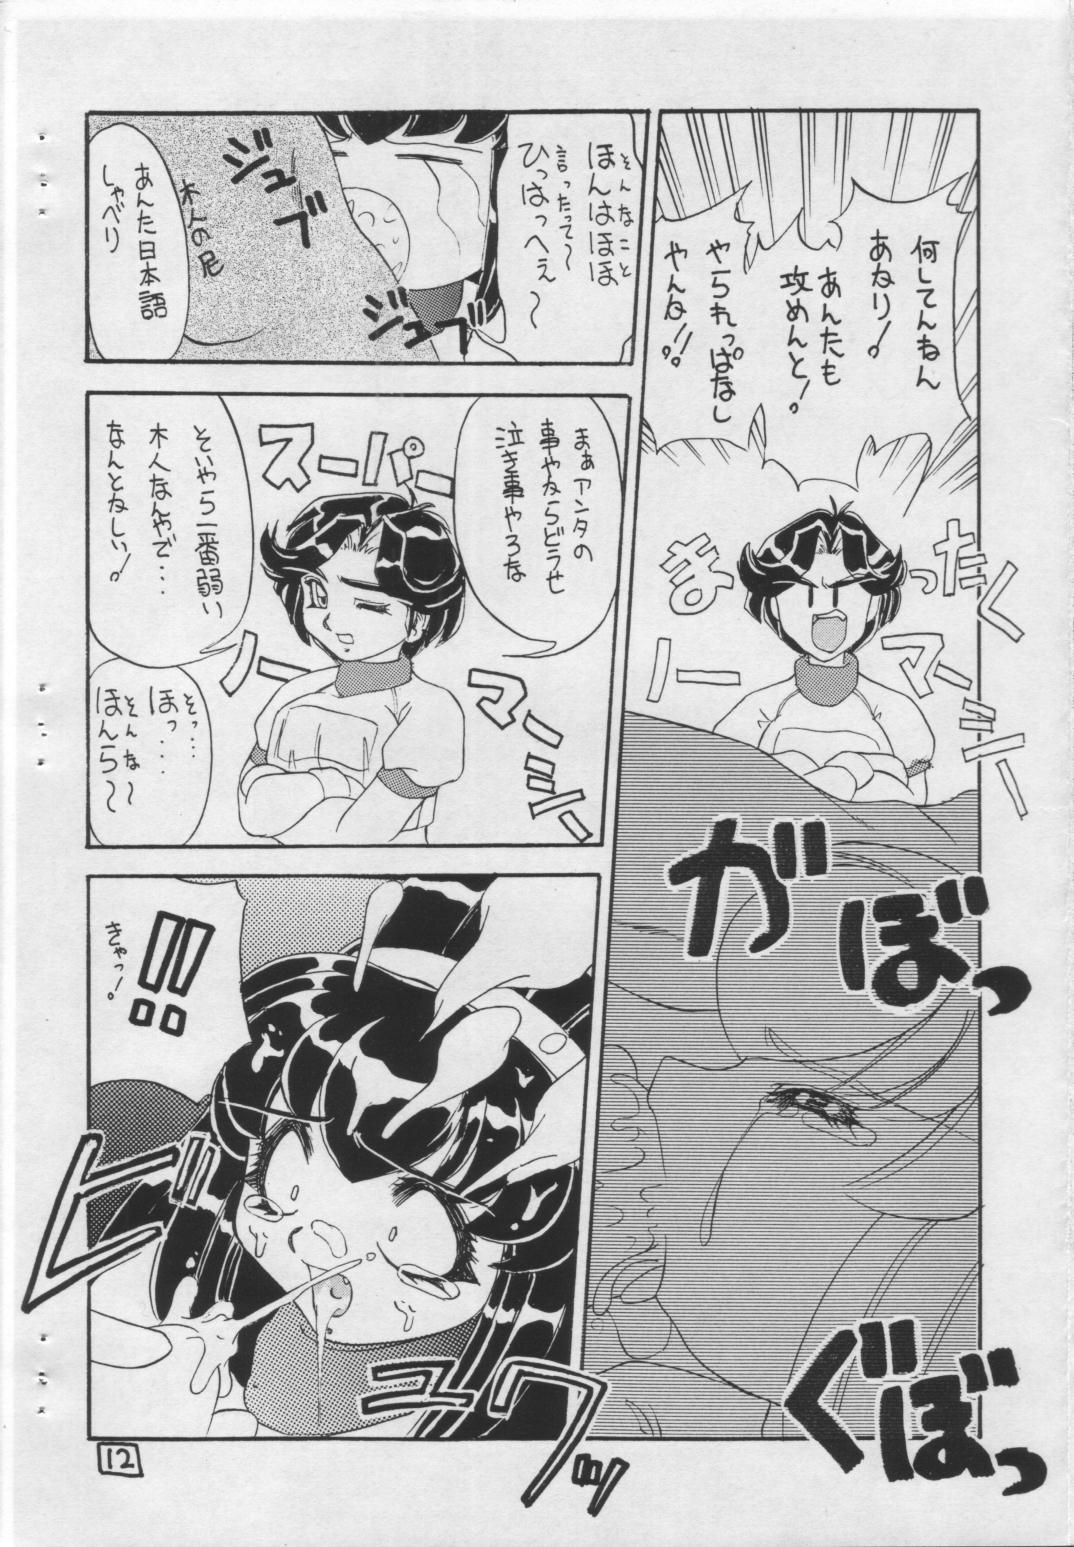 Moms Soko ni Ai wa Aru no?! Vol.I DAIDOKAI - Battle athletes Assgape - Page 11